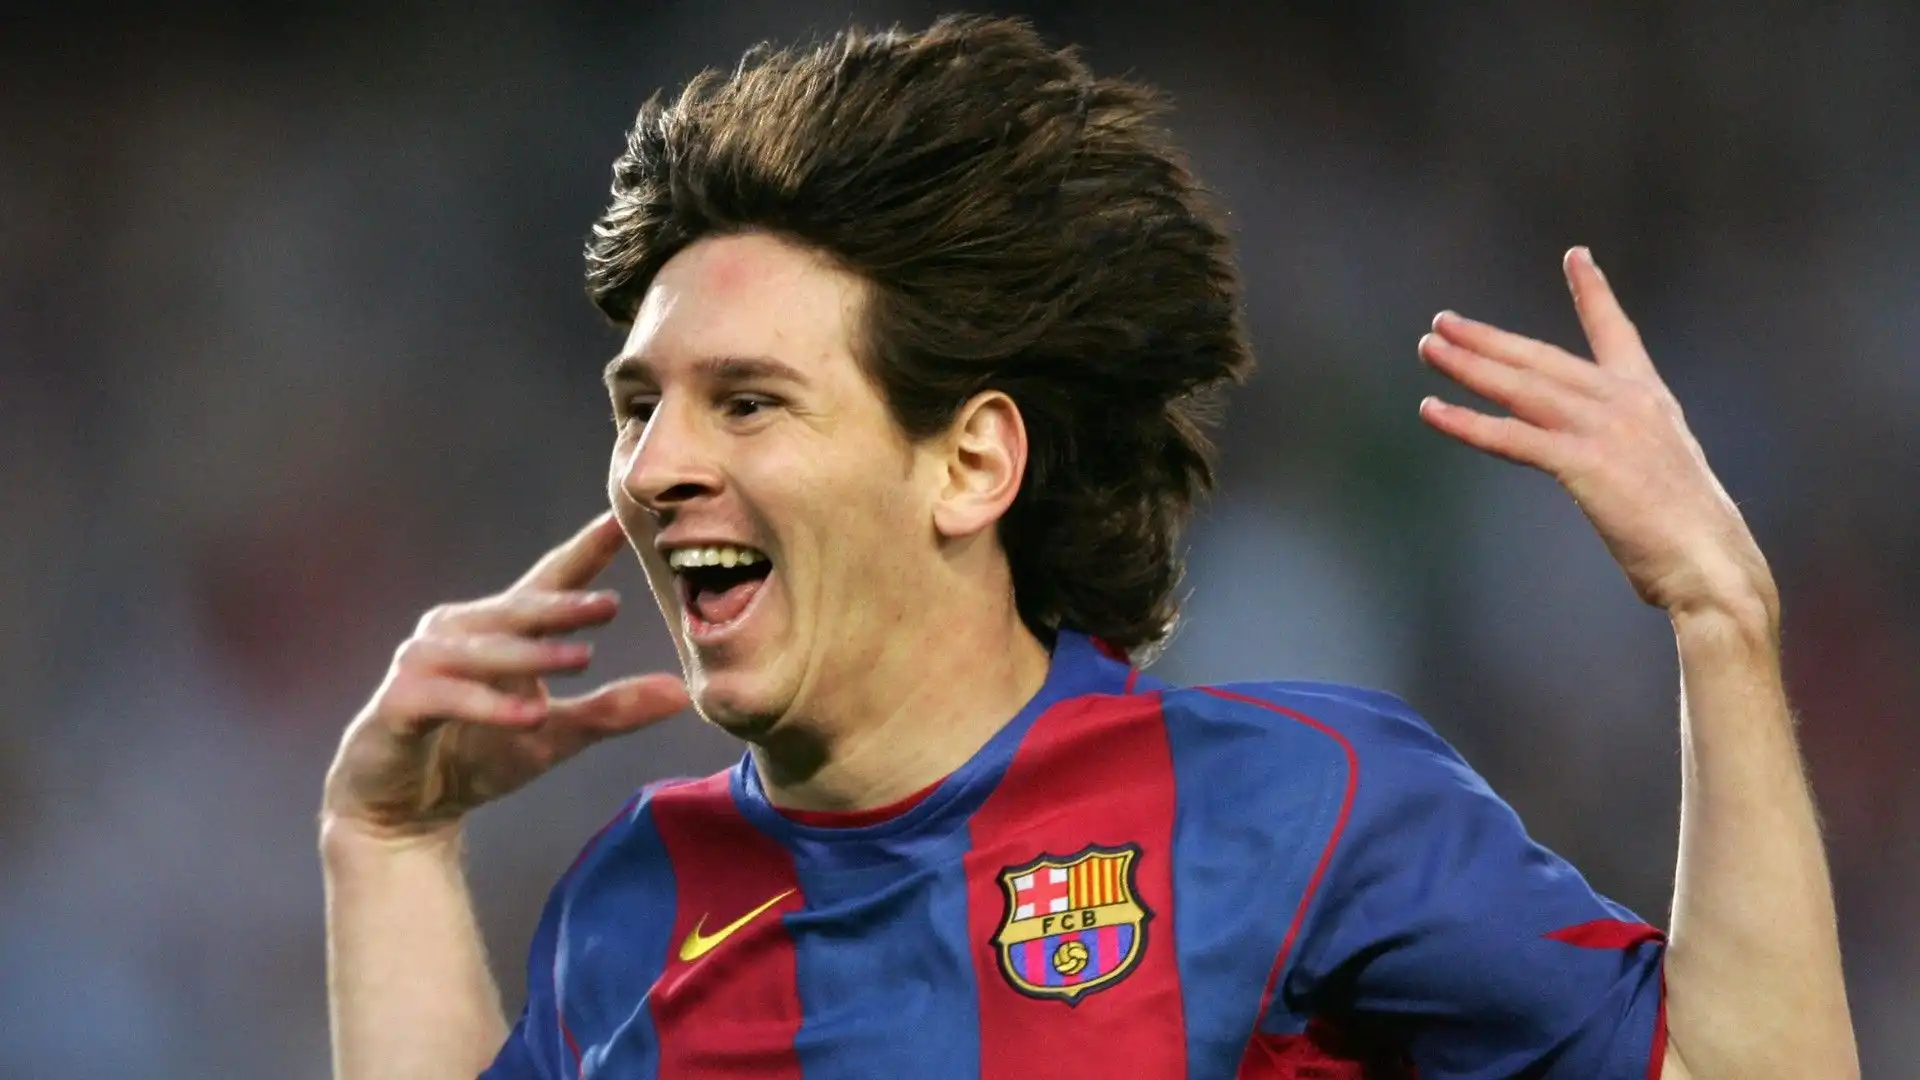 Con quale numero di maglia ha esordito Messi al Barcellona?
A- 30
B- 99
C- 10